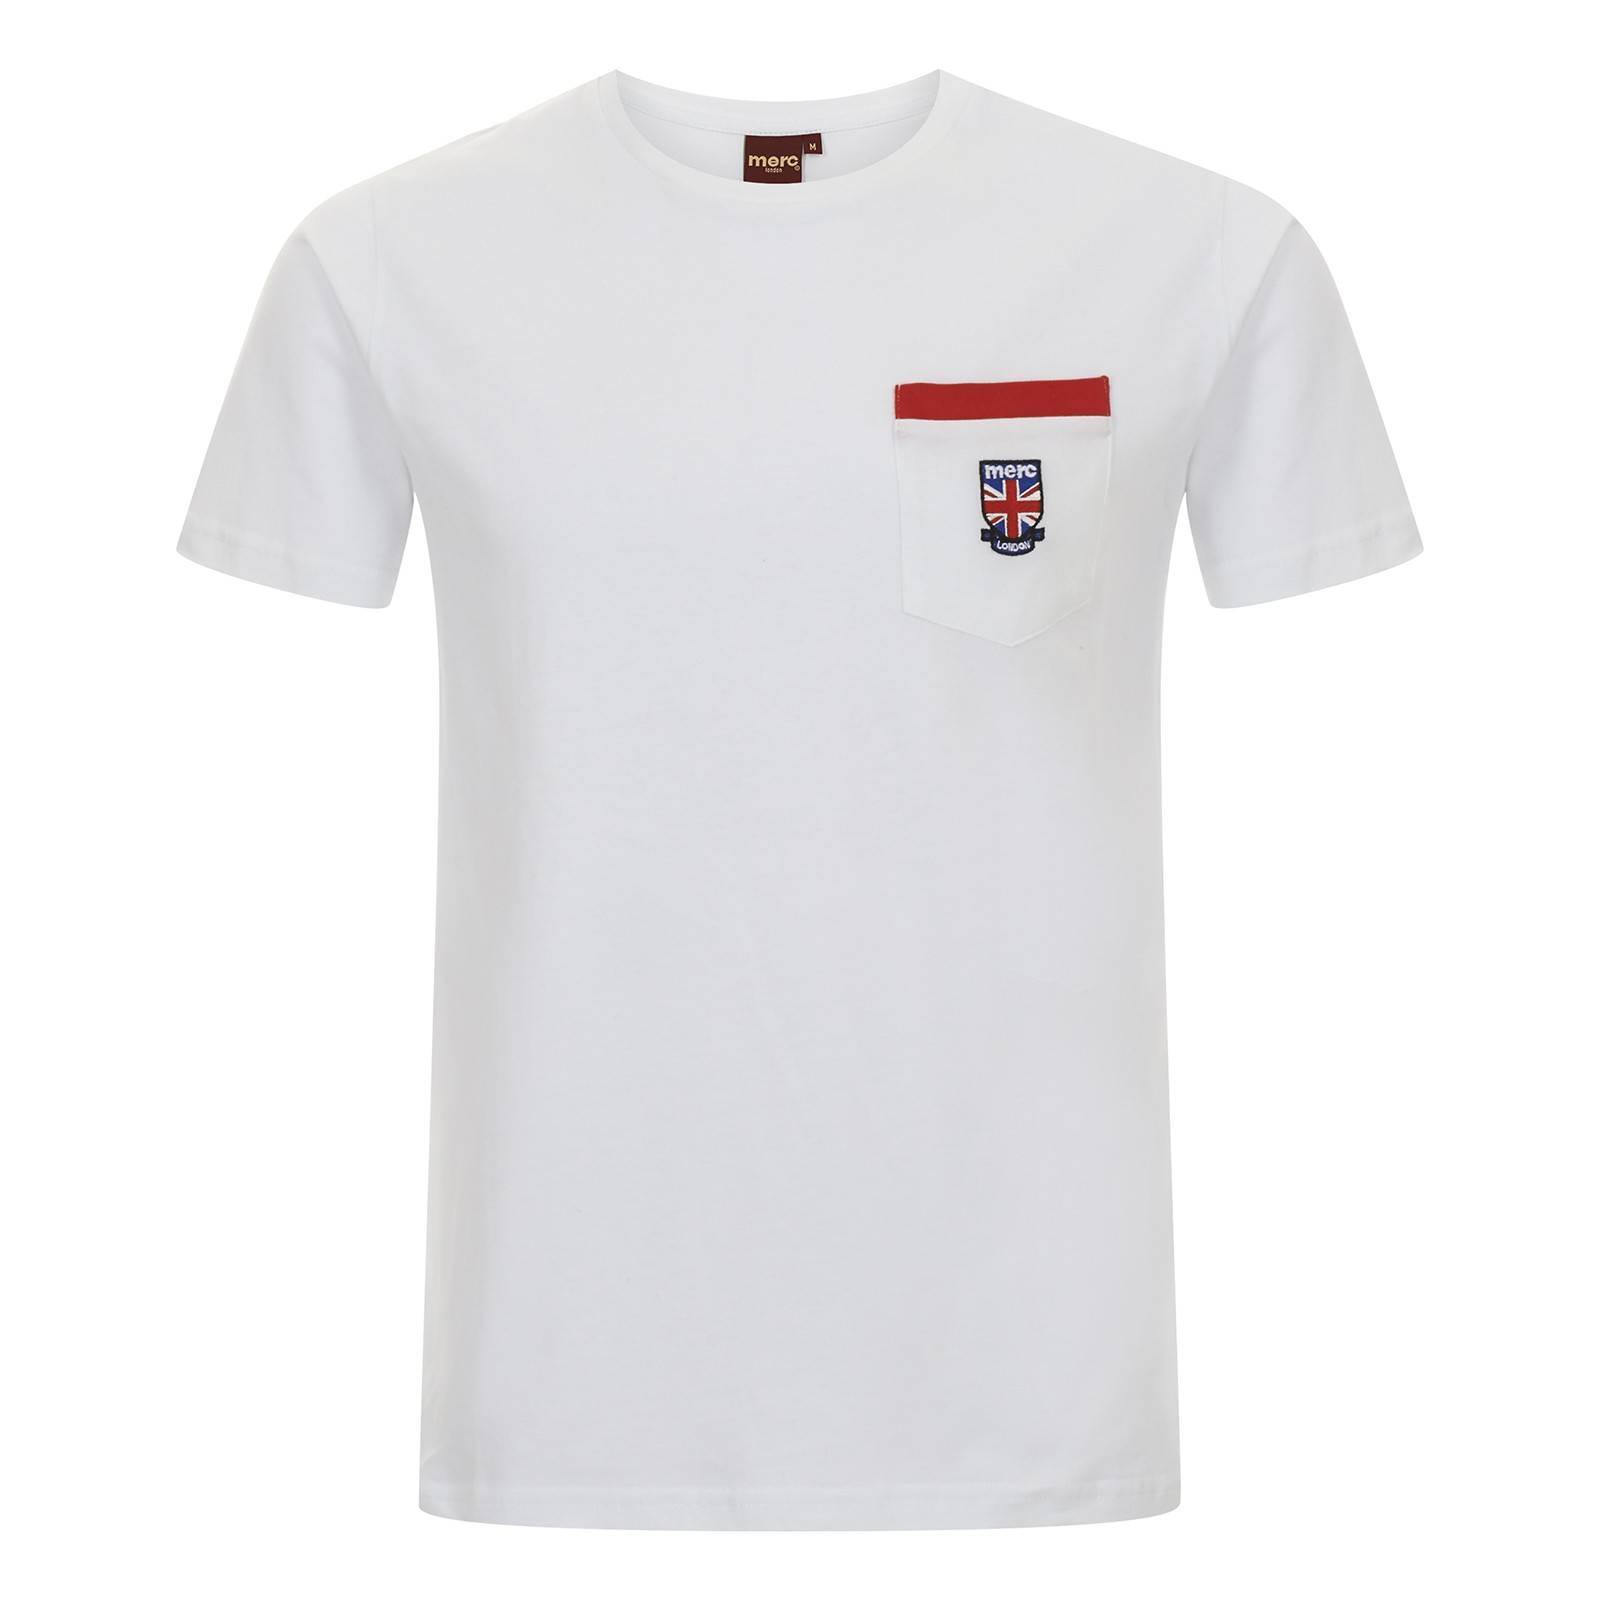 Однотонная мужская футболка с коротким рукавом Vincent, белая, бренда MERC, купить на официальном сайте со СКИДКОЙ!